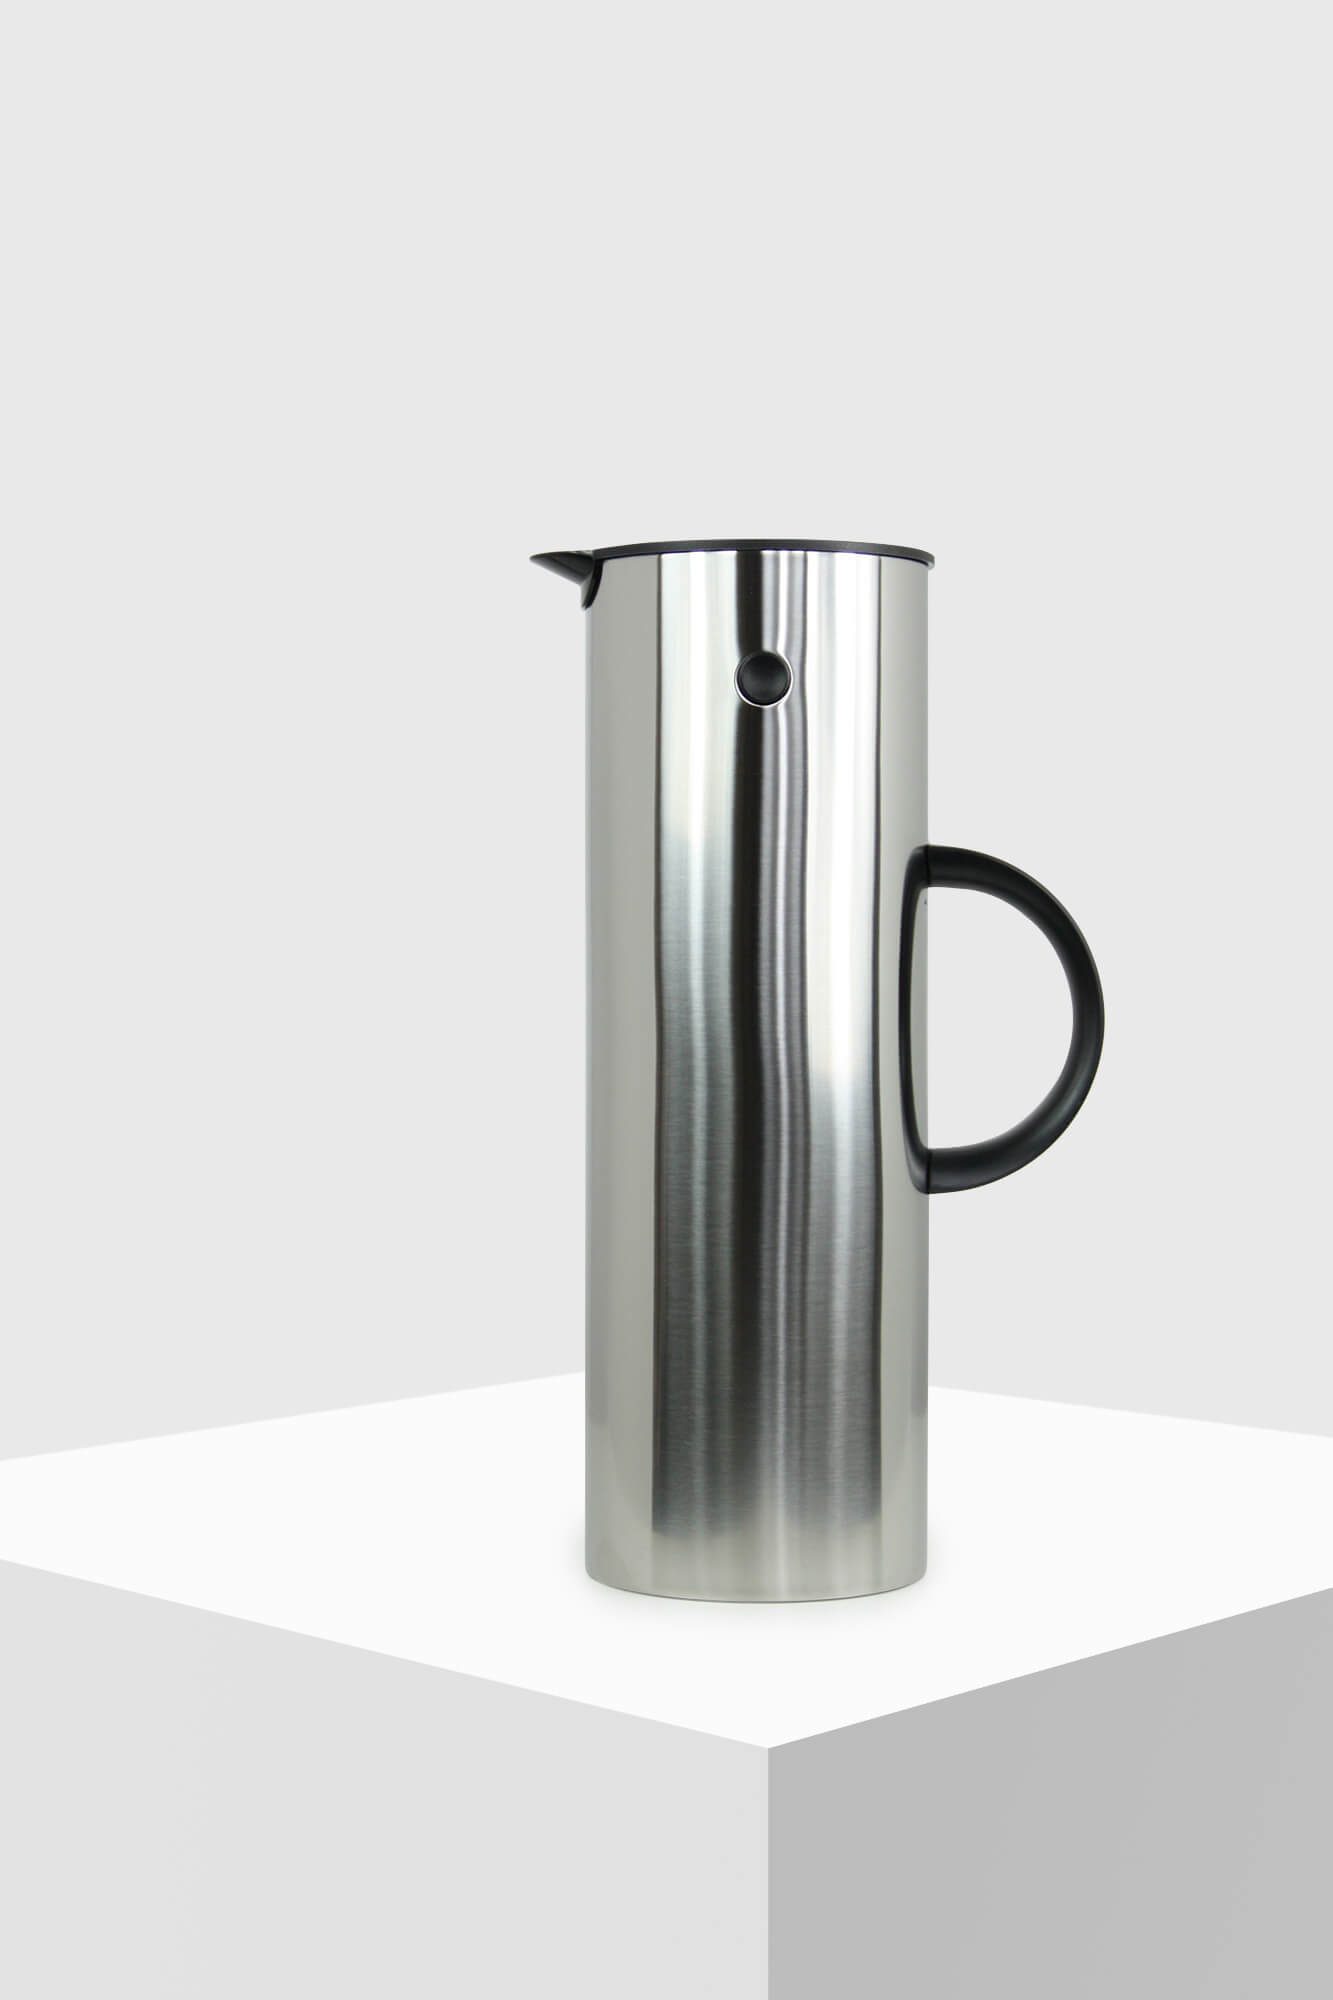 Stelton EM77 Isolierkanne Thermokanne Kaffee Tee Kanne Kunststoff Stahl 500 ml 